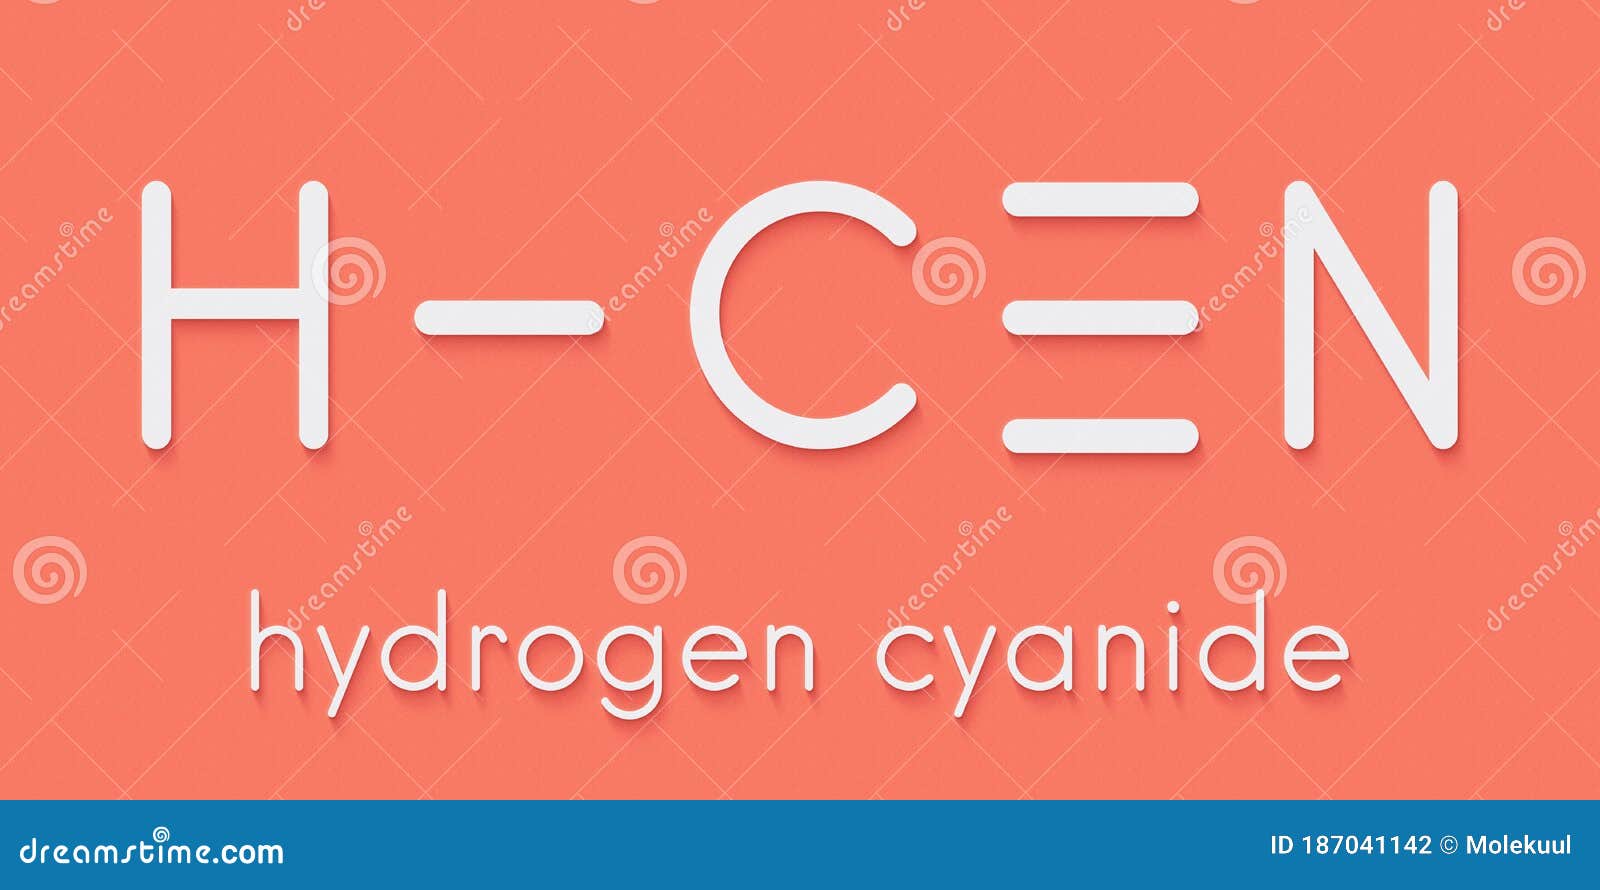 hydrogen cyanide hcn poison molecule. has typical almond-like odor. skeletal formula.